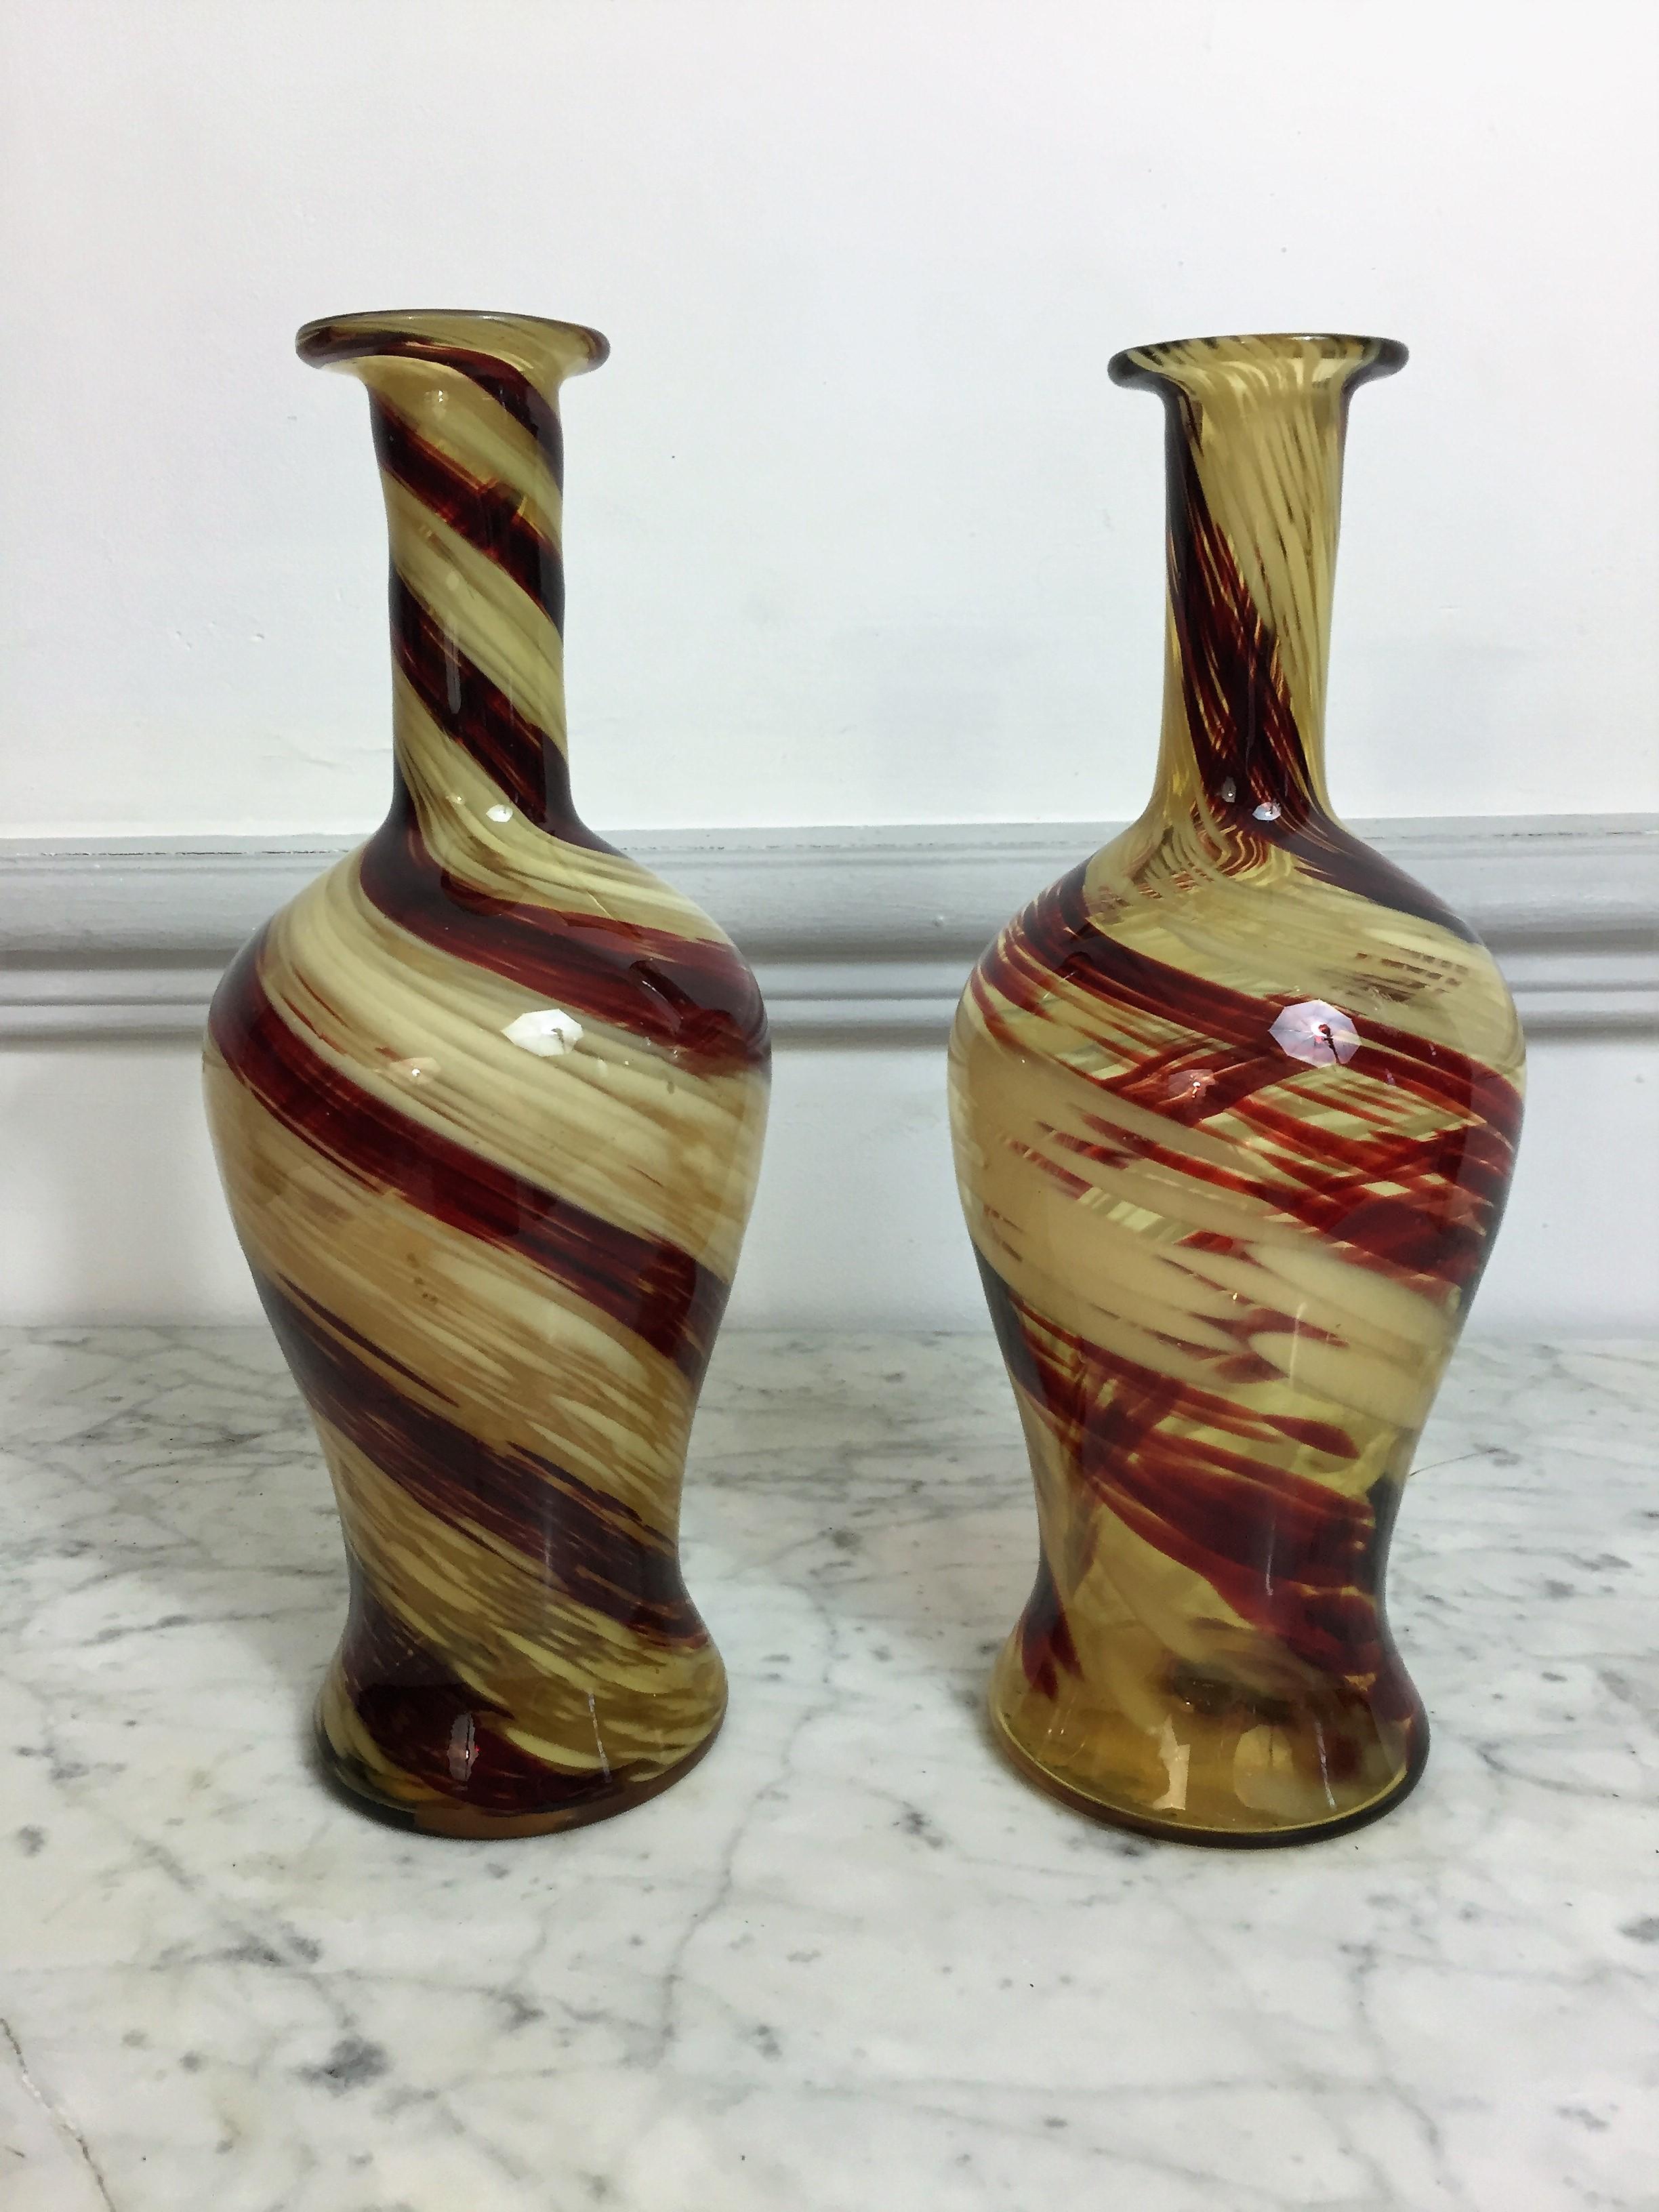 Paar von roten und beigen Glas geblasen triflor Vase in den Geschmack von Murano.
Diese Vasen können als Krüge oder Karaffen verwendet werden
Kleine Vorgabe im Inneren einer der Vasen
19. Jahrhundert.